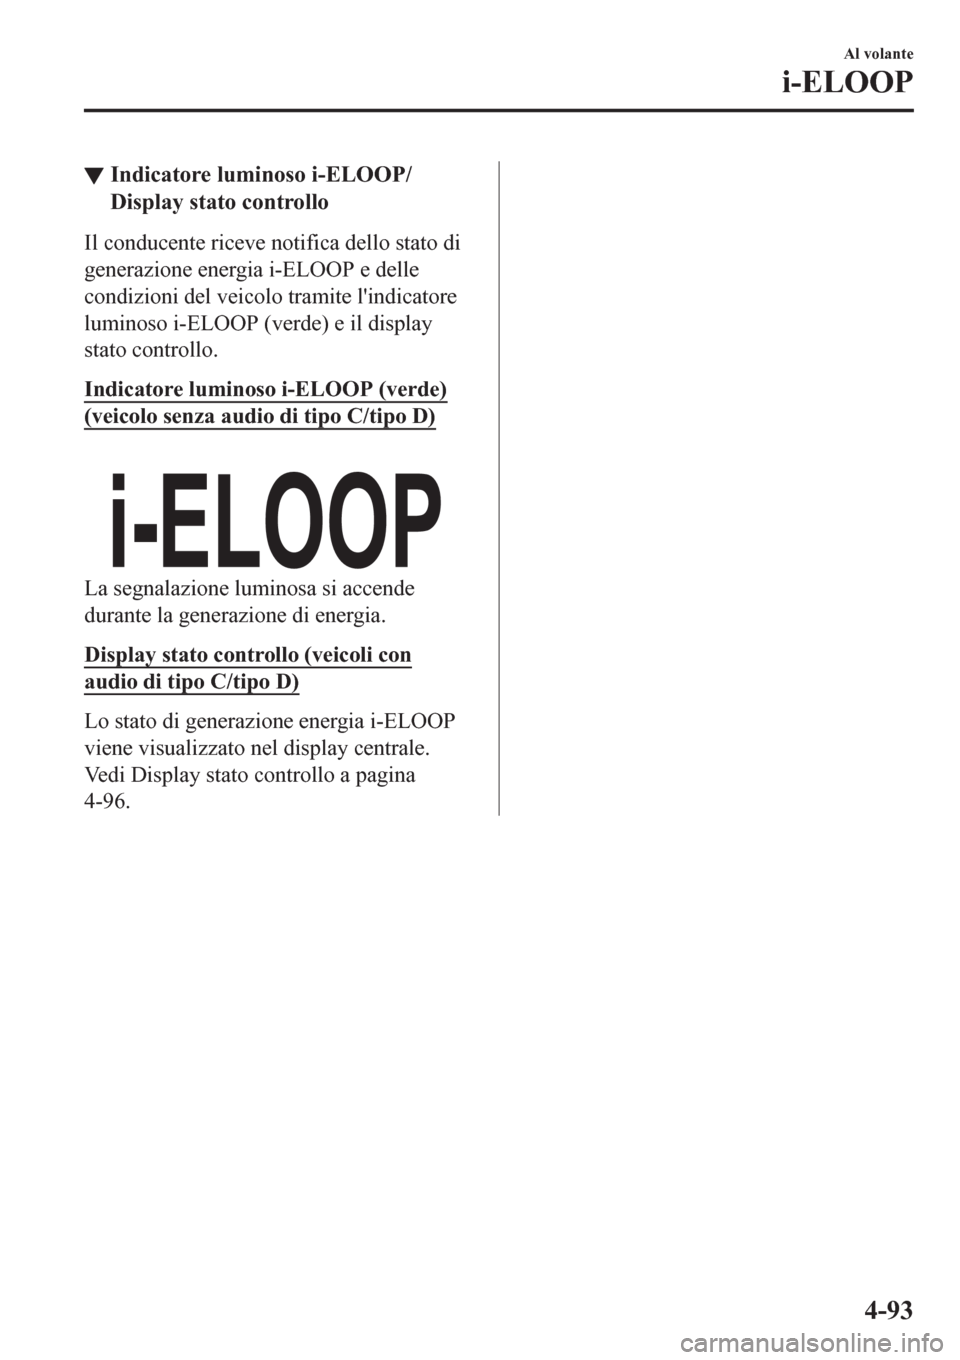 MAZDA MODEL CX-3 2016  Manuale del proprietario (in Italian) ▼Indicatore luminoso i-ELOOP/
Display stato controllo
Il conducente riceve notifica dello stato di
generazione energia i-ELOOP e delle
condizioni del veicolo tramite lindicatore
luminoso i-ELOOP (v